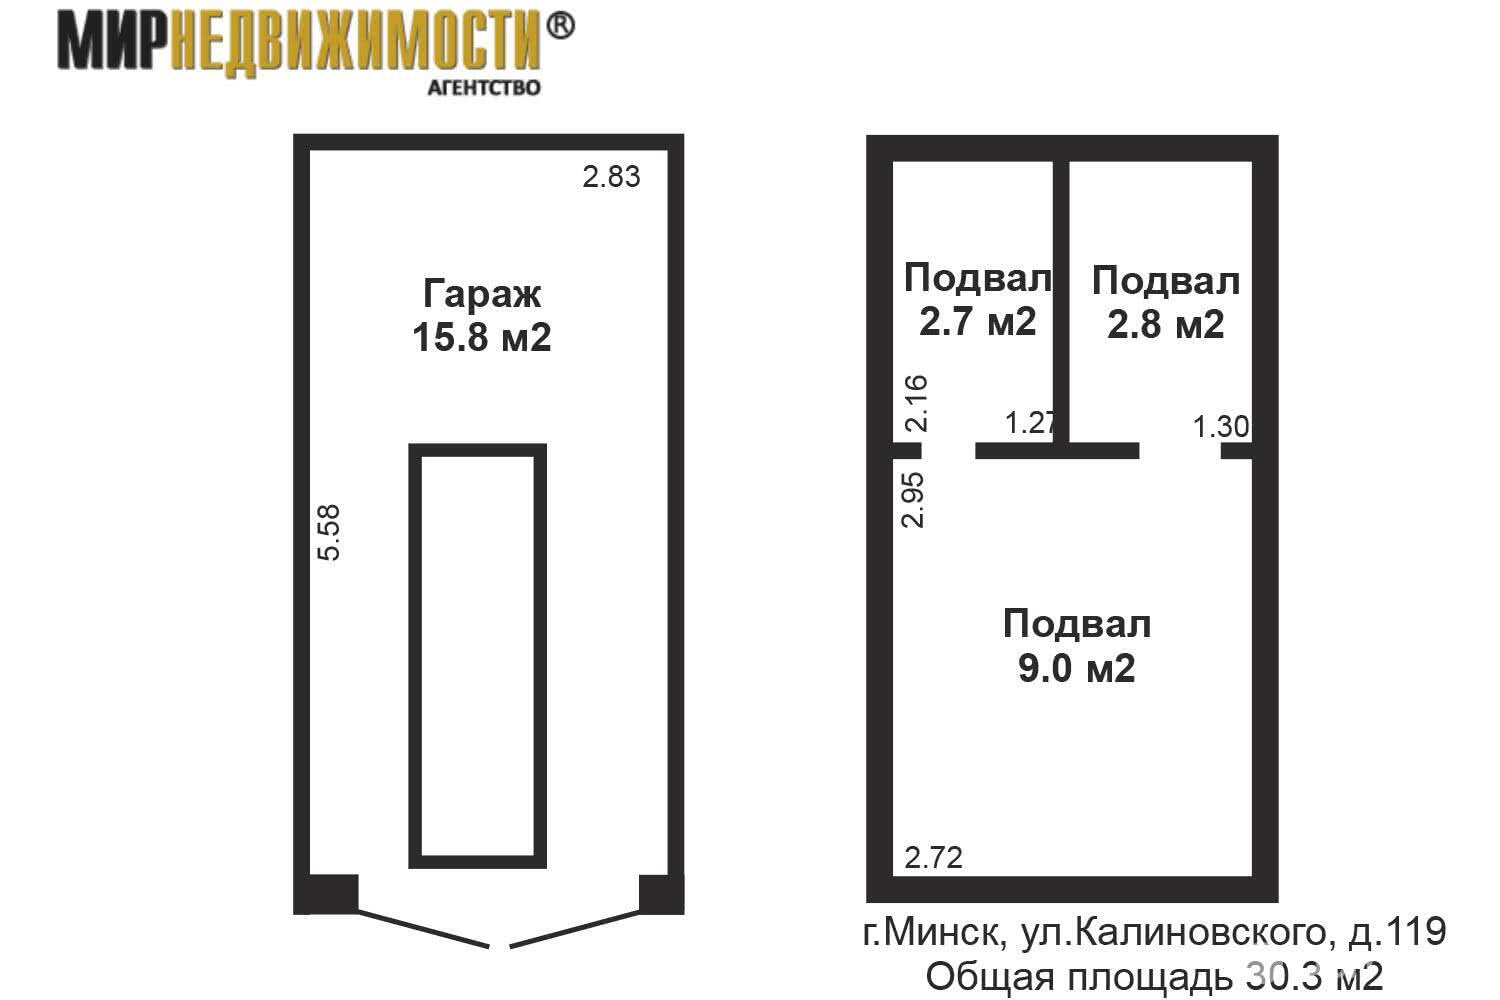 Цена продажи гаража, Минск, ул. Калиновского, д. 119